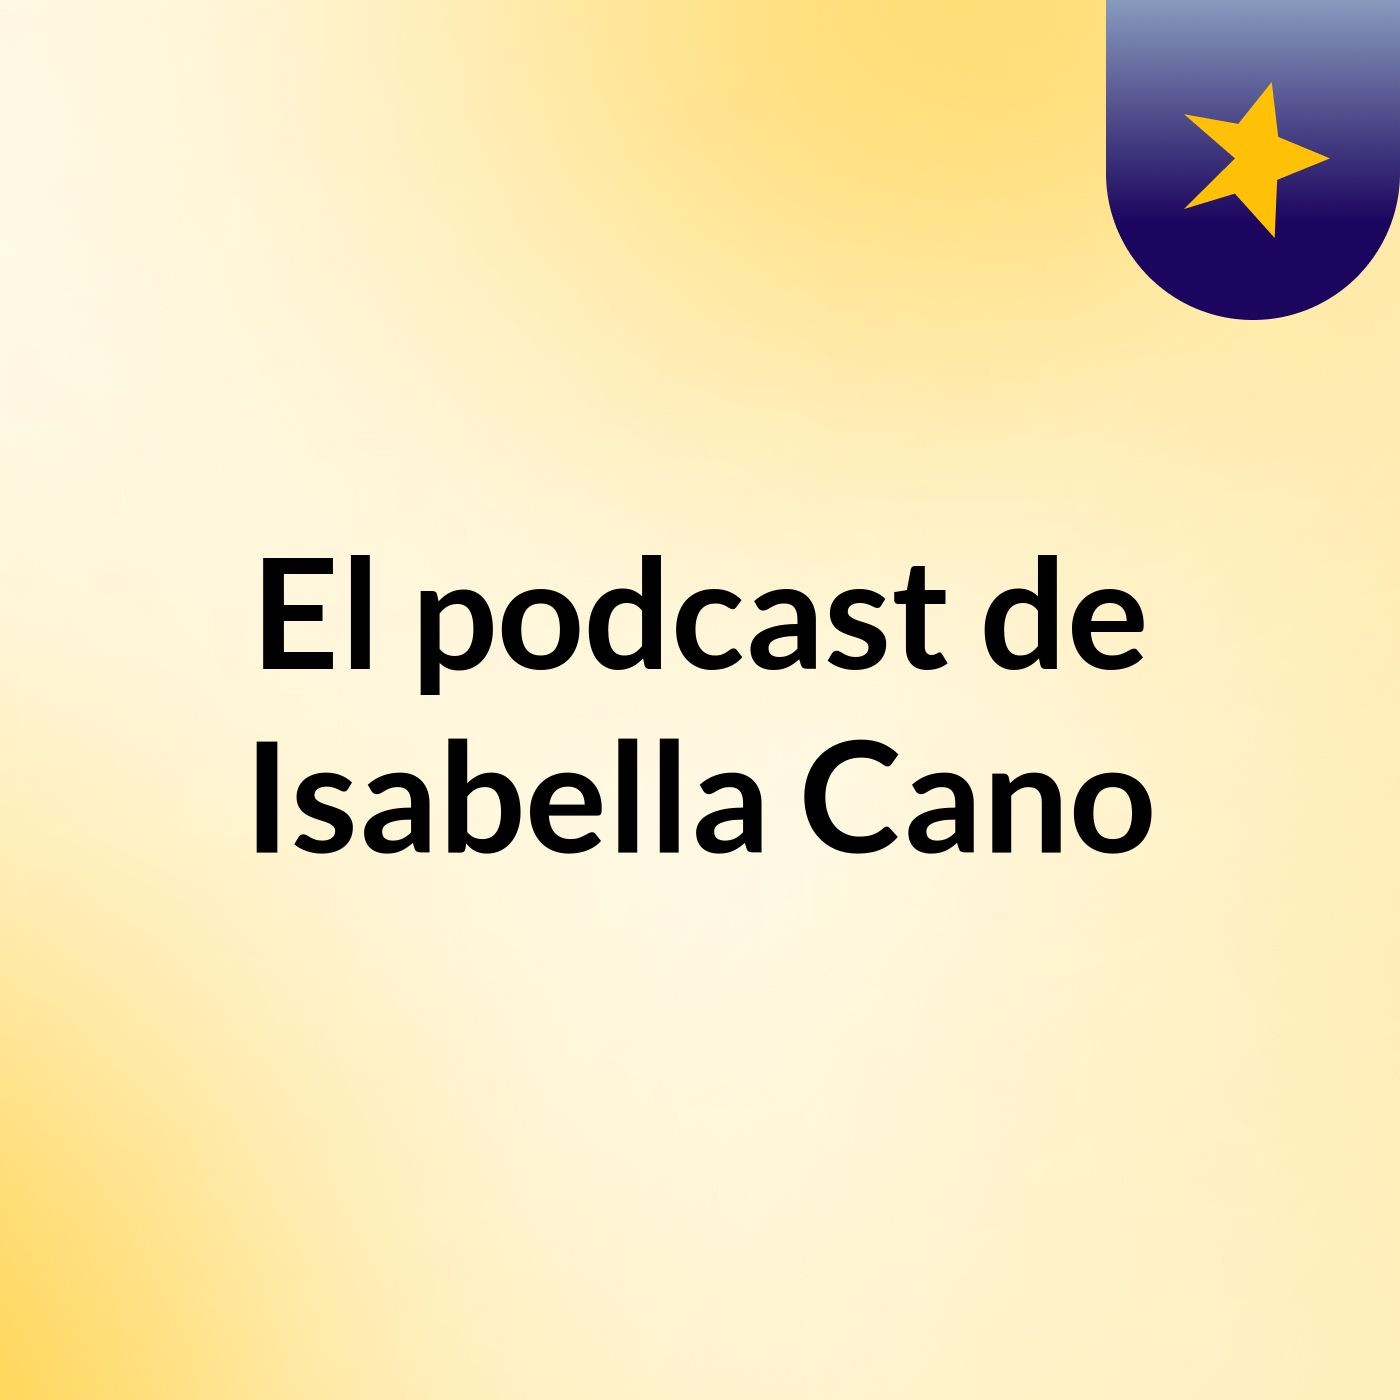 El podcast de Isabella Cano